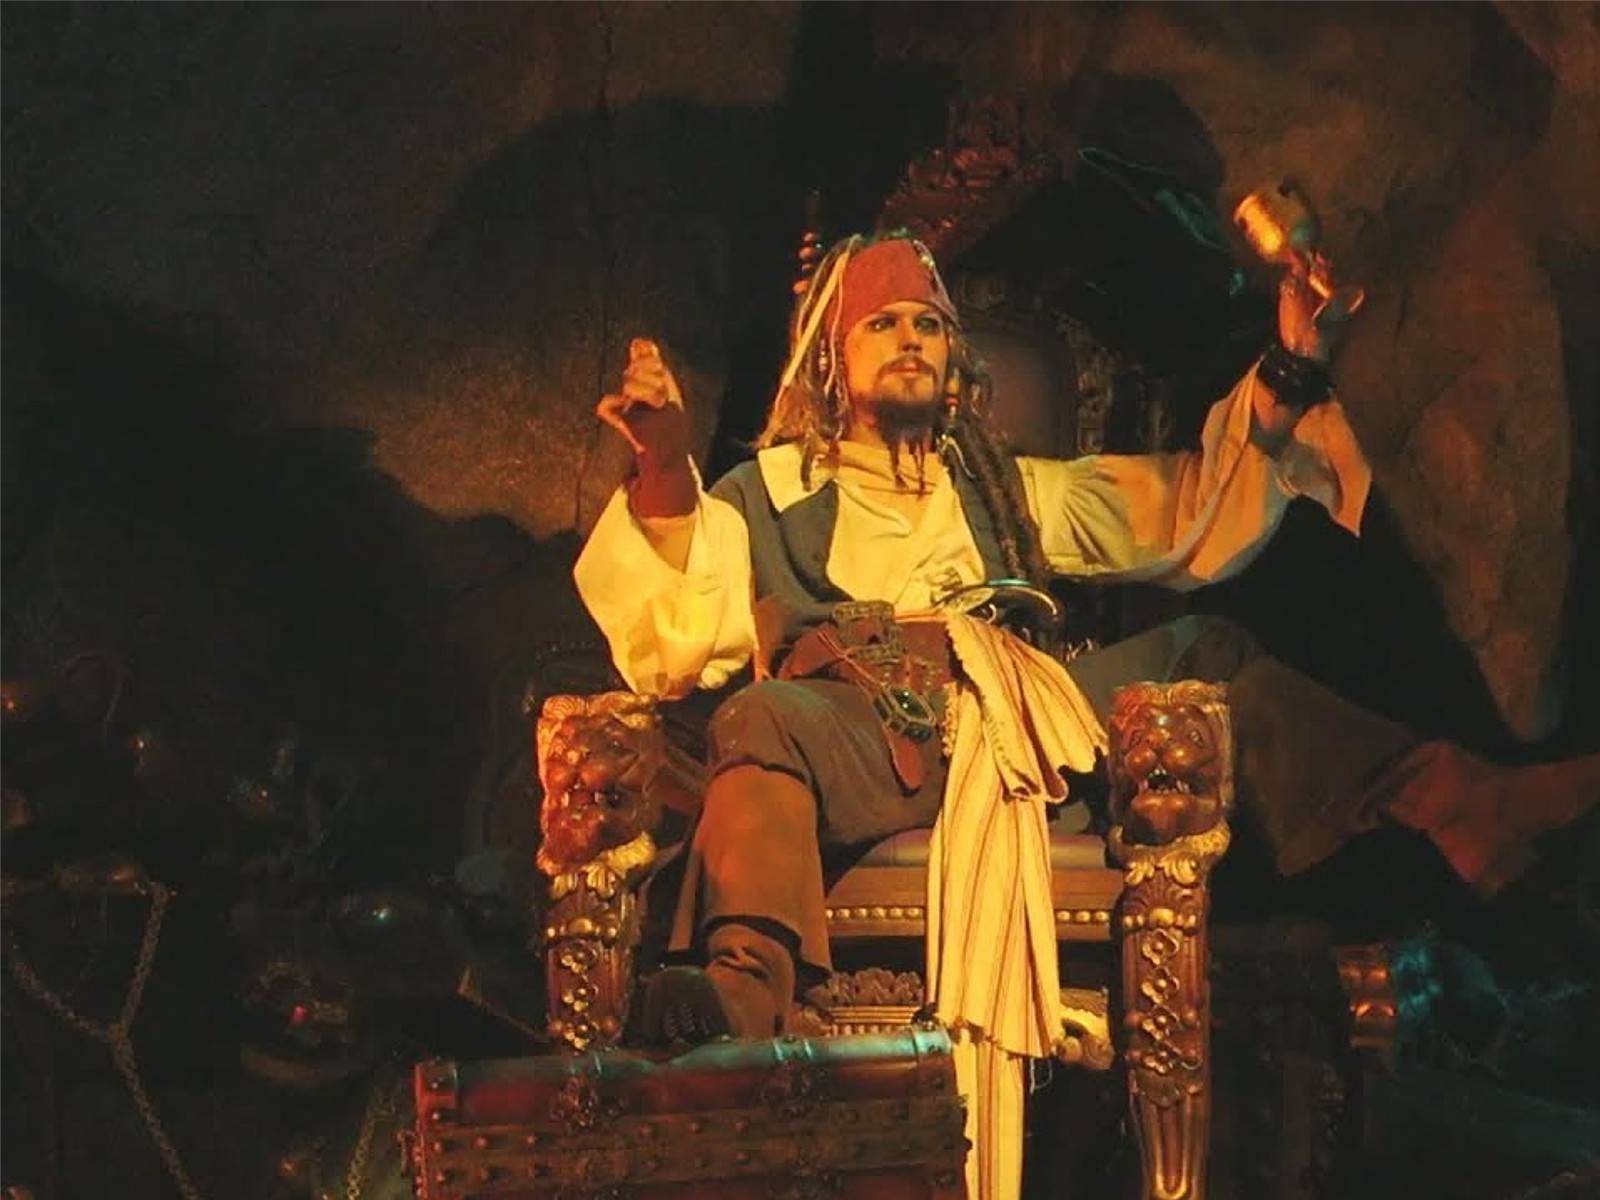 Jack Sparrow animatronic nell'attrazione di Disneyland